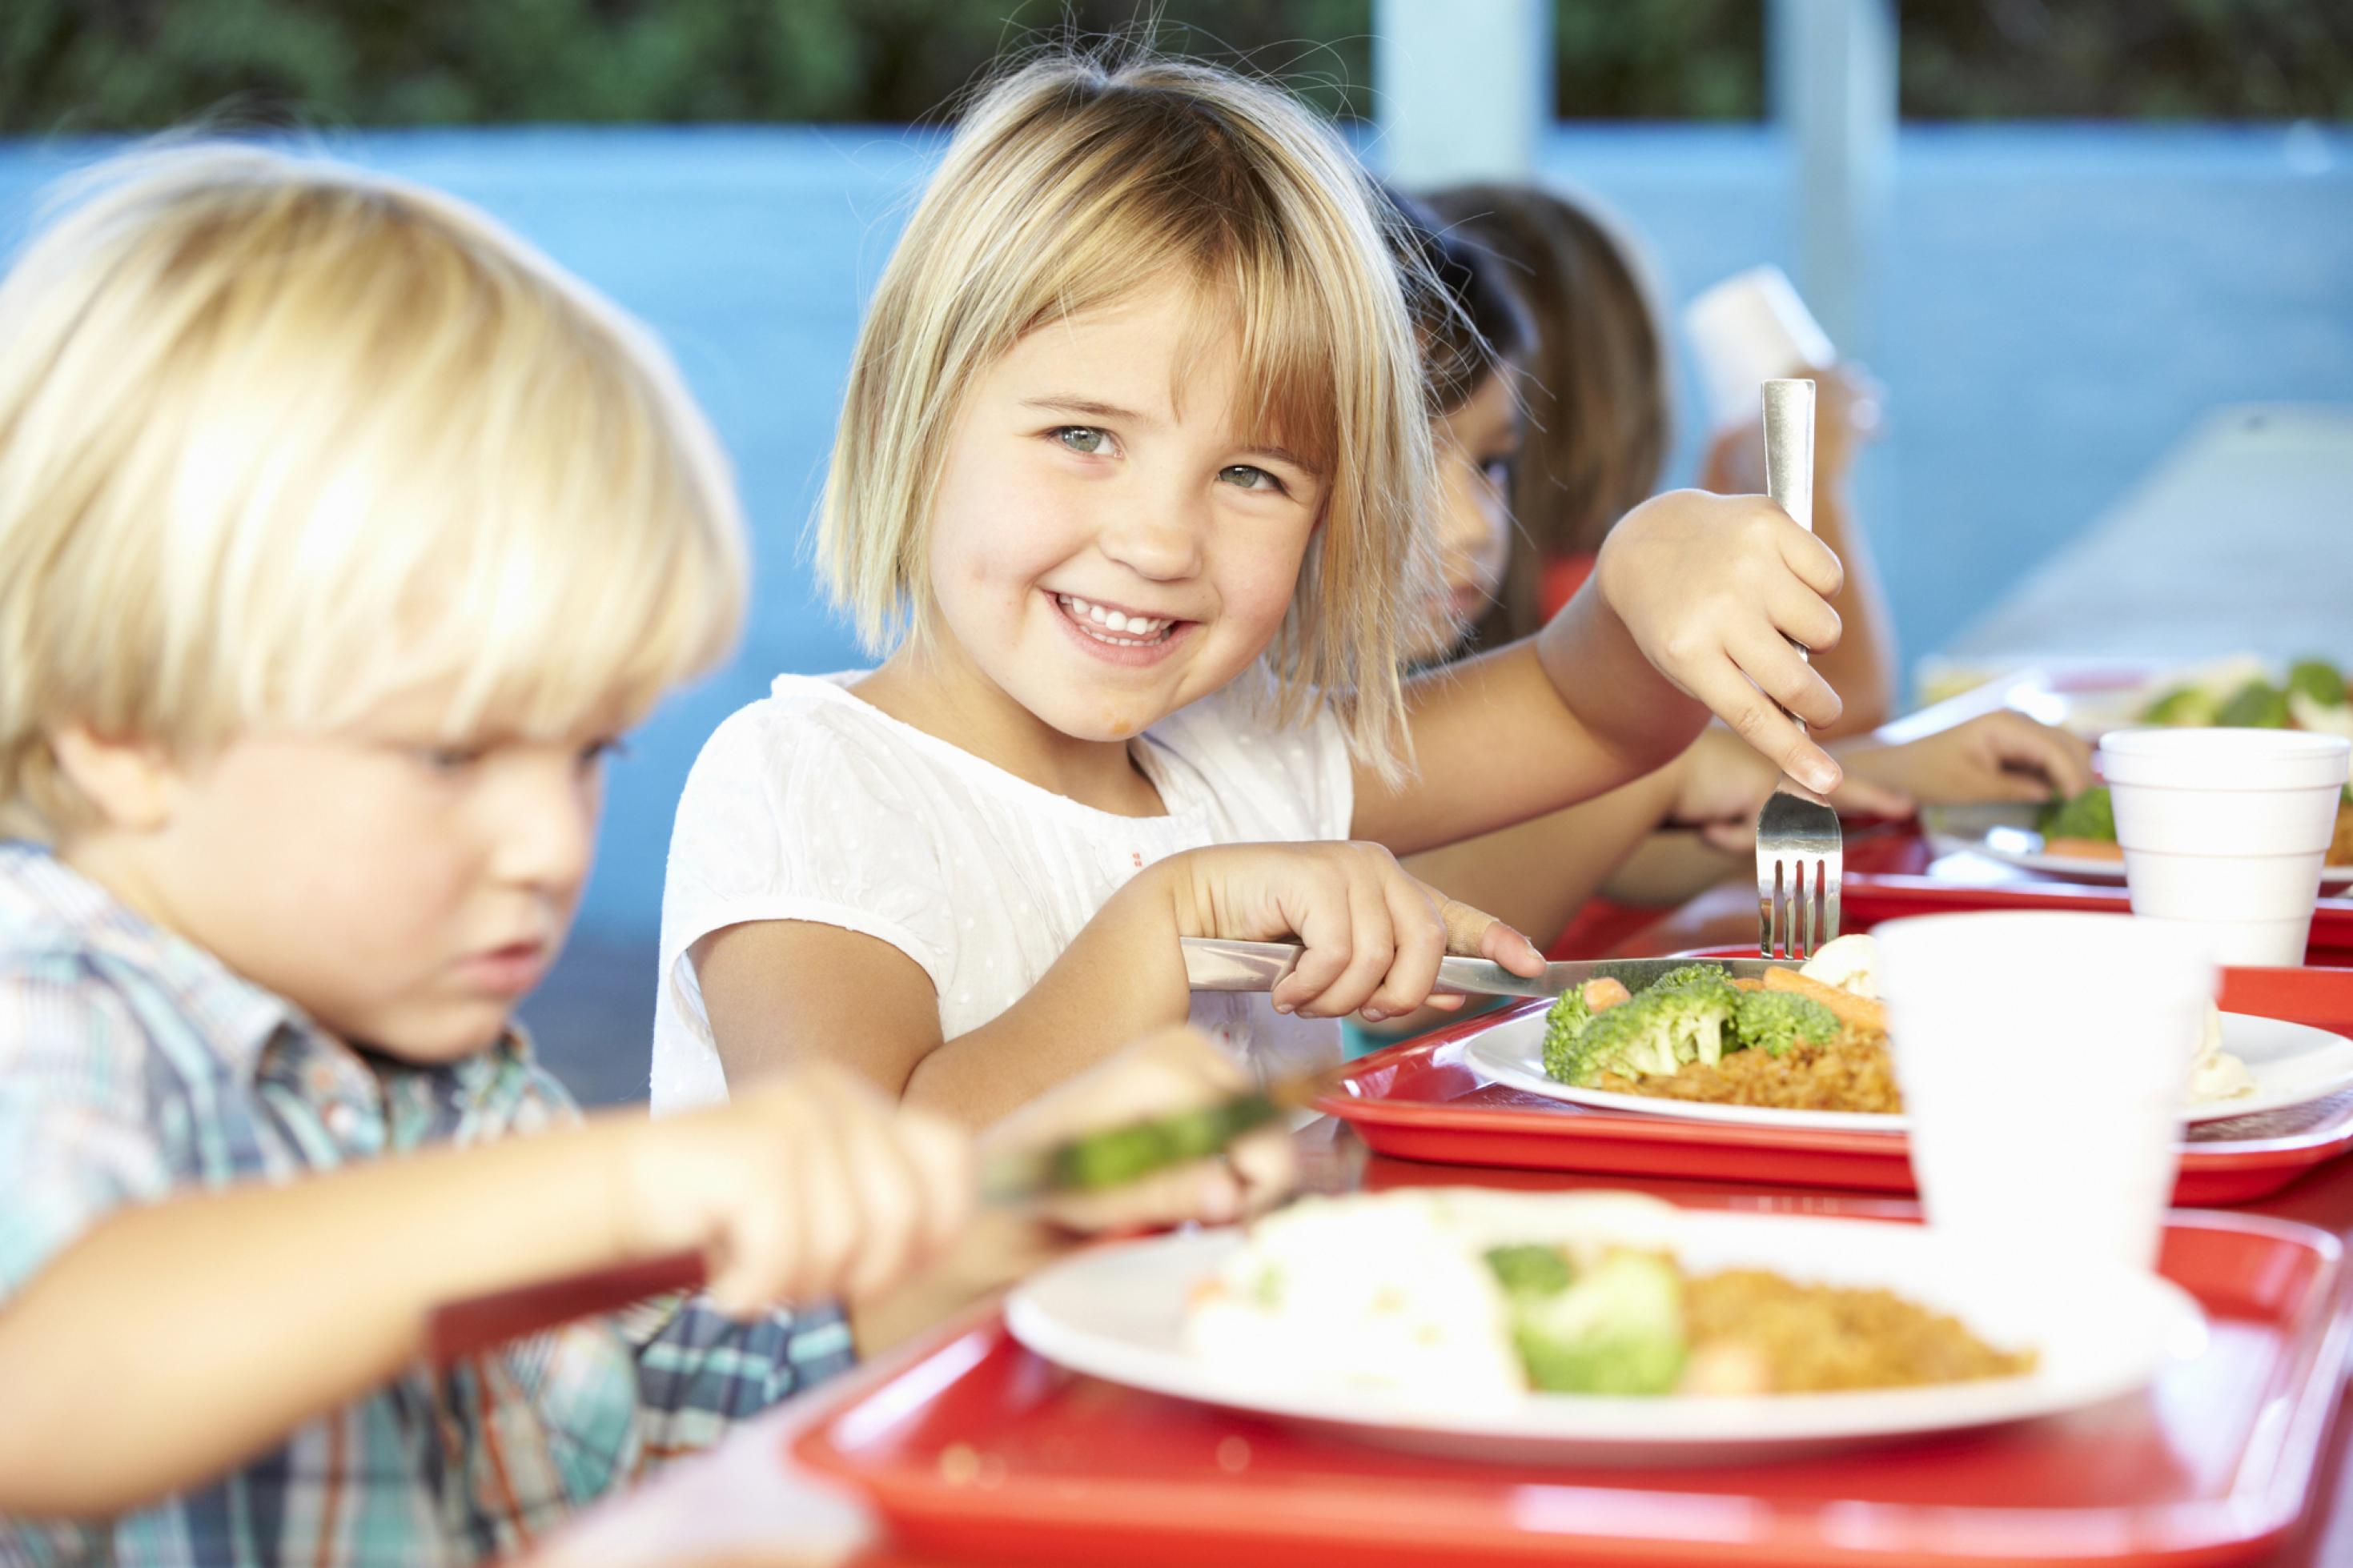 Fröhliche Kinder beim Essen in der Mensa, vor ihnen ein Teller unter anderem mit Brokkoli.